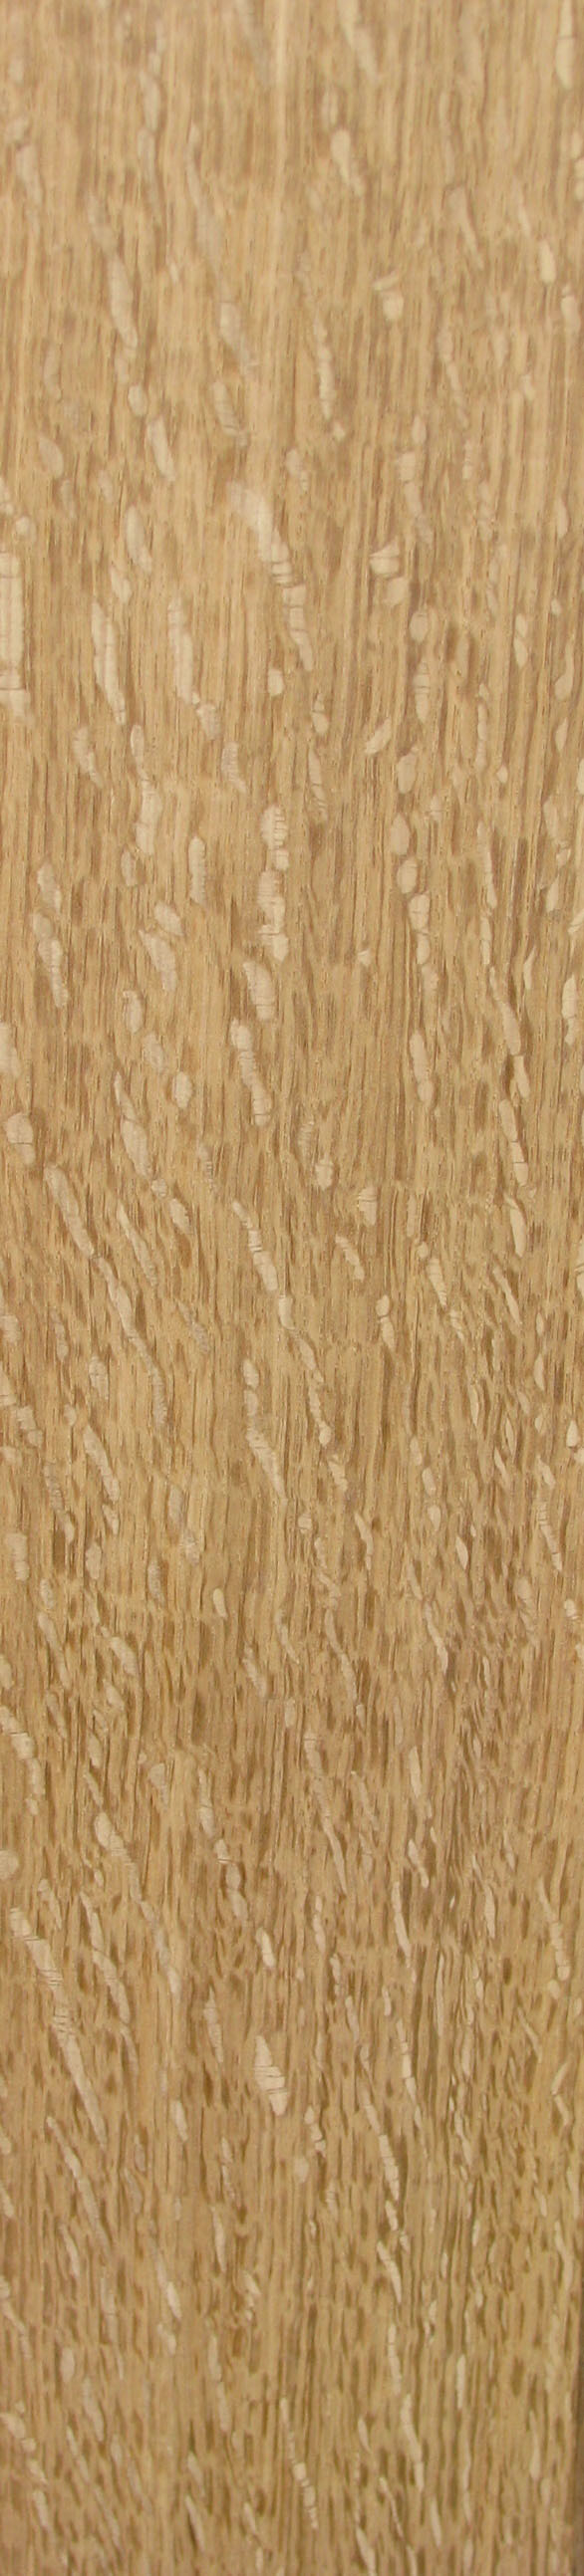 white oak lumber 1